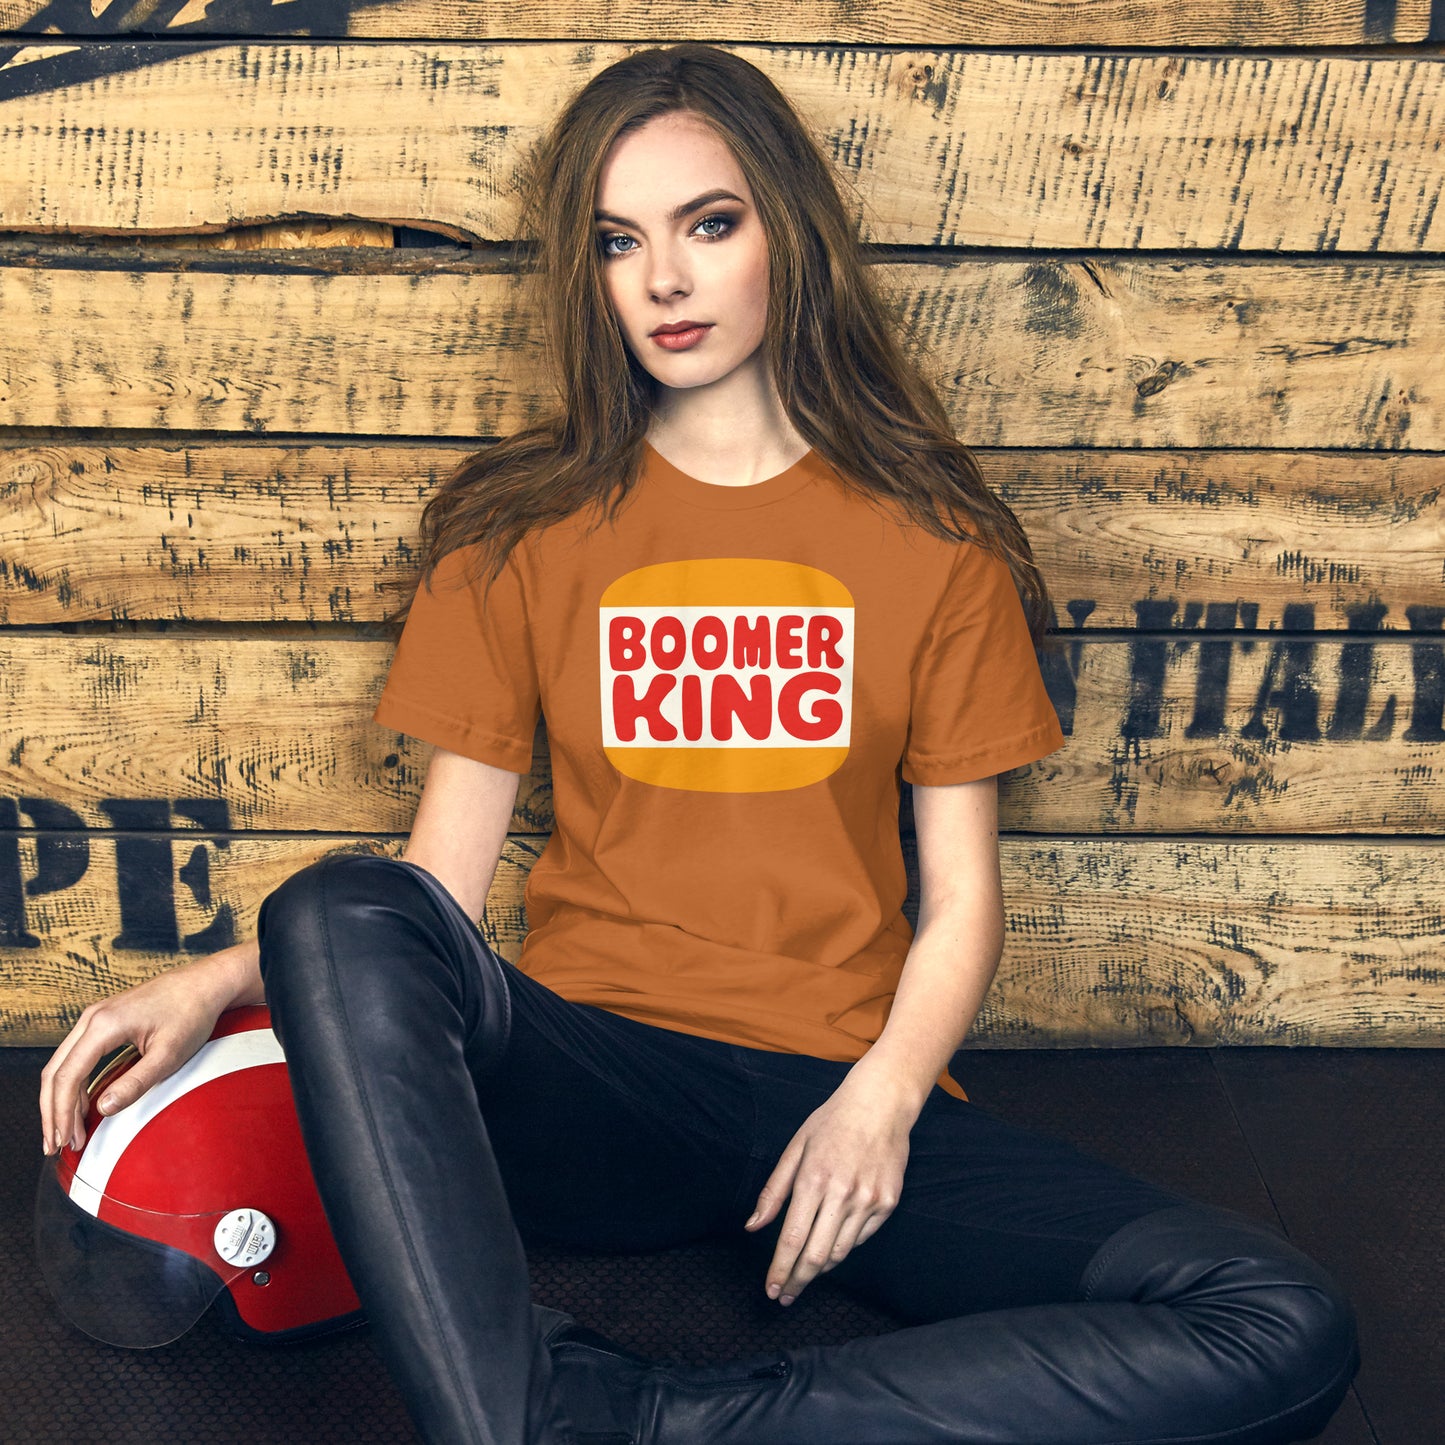 Boomer King t-shirt